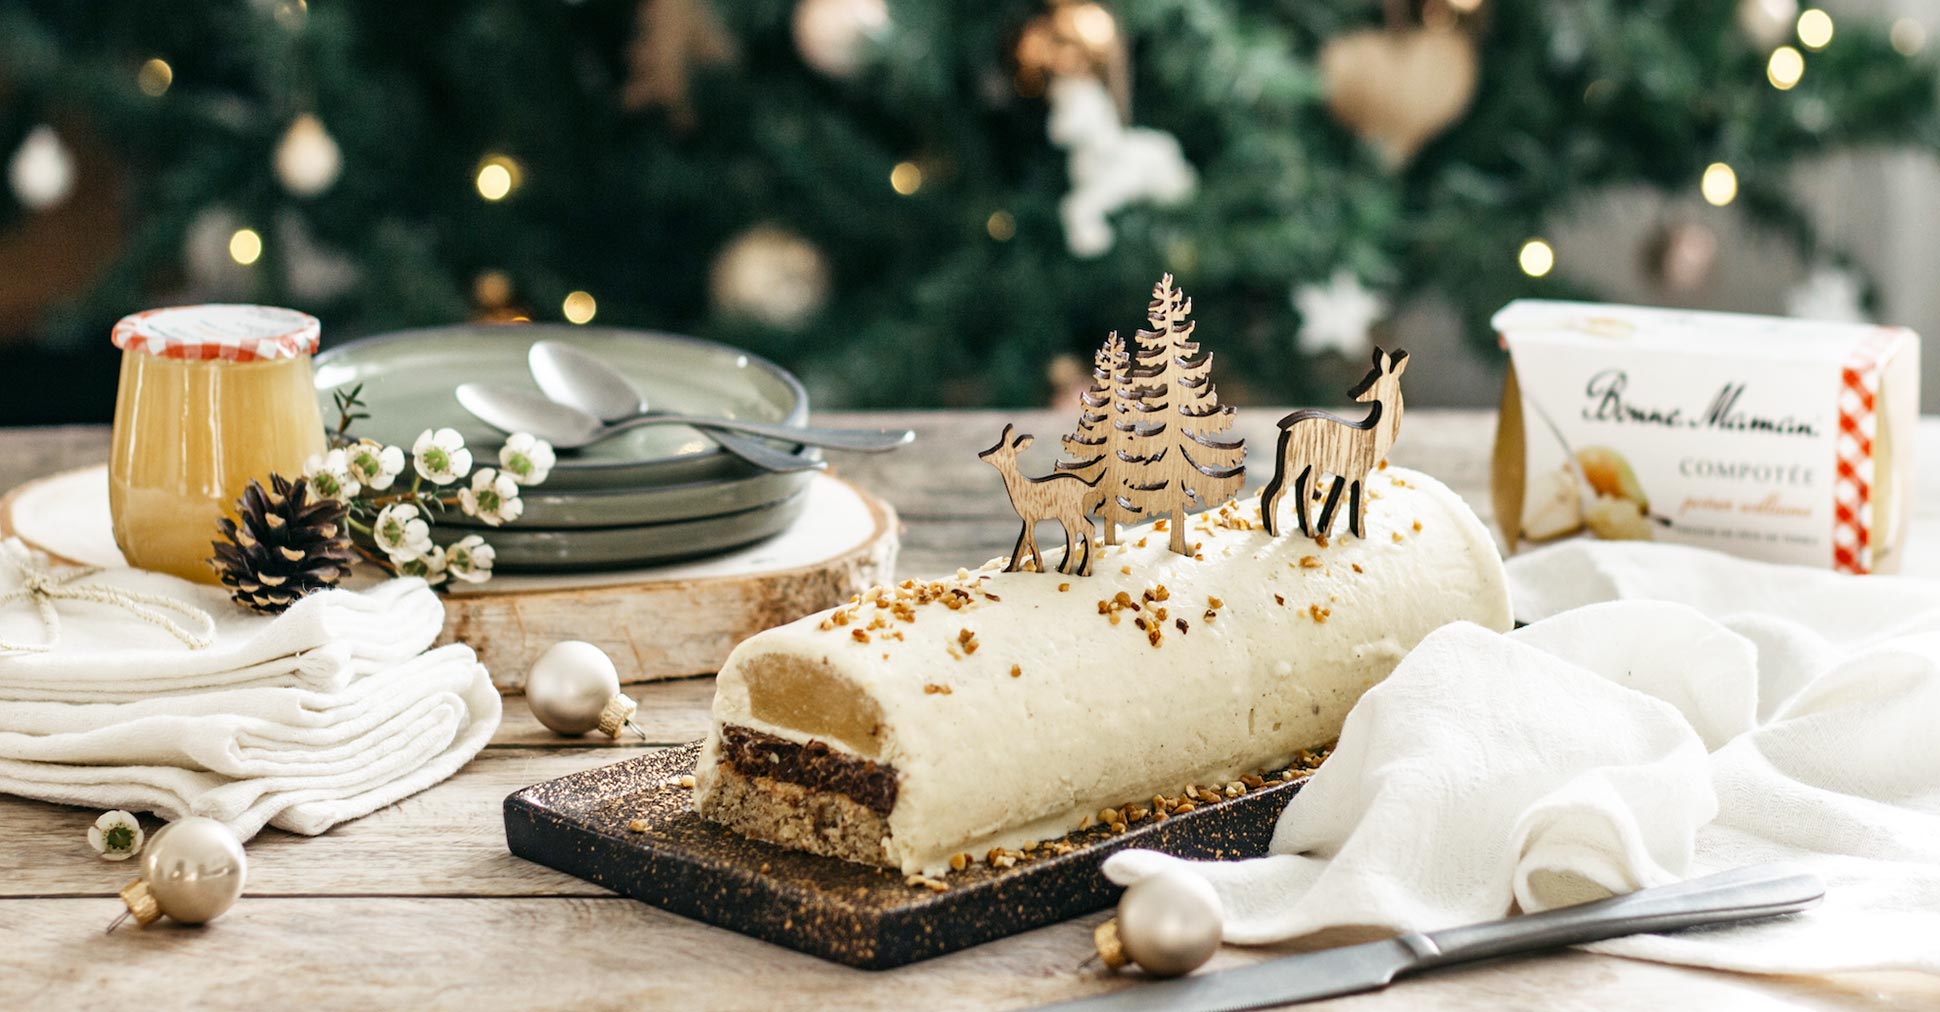 Bûche vanille insert praliné pour Noël - Recette par Le labo de maman